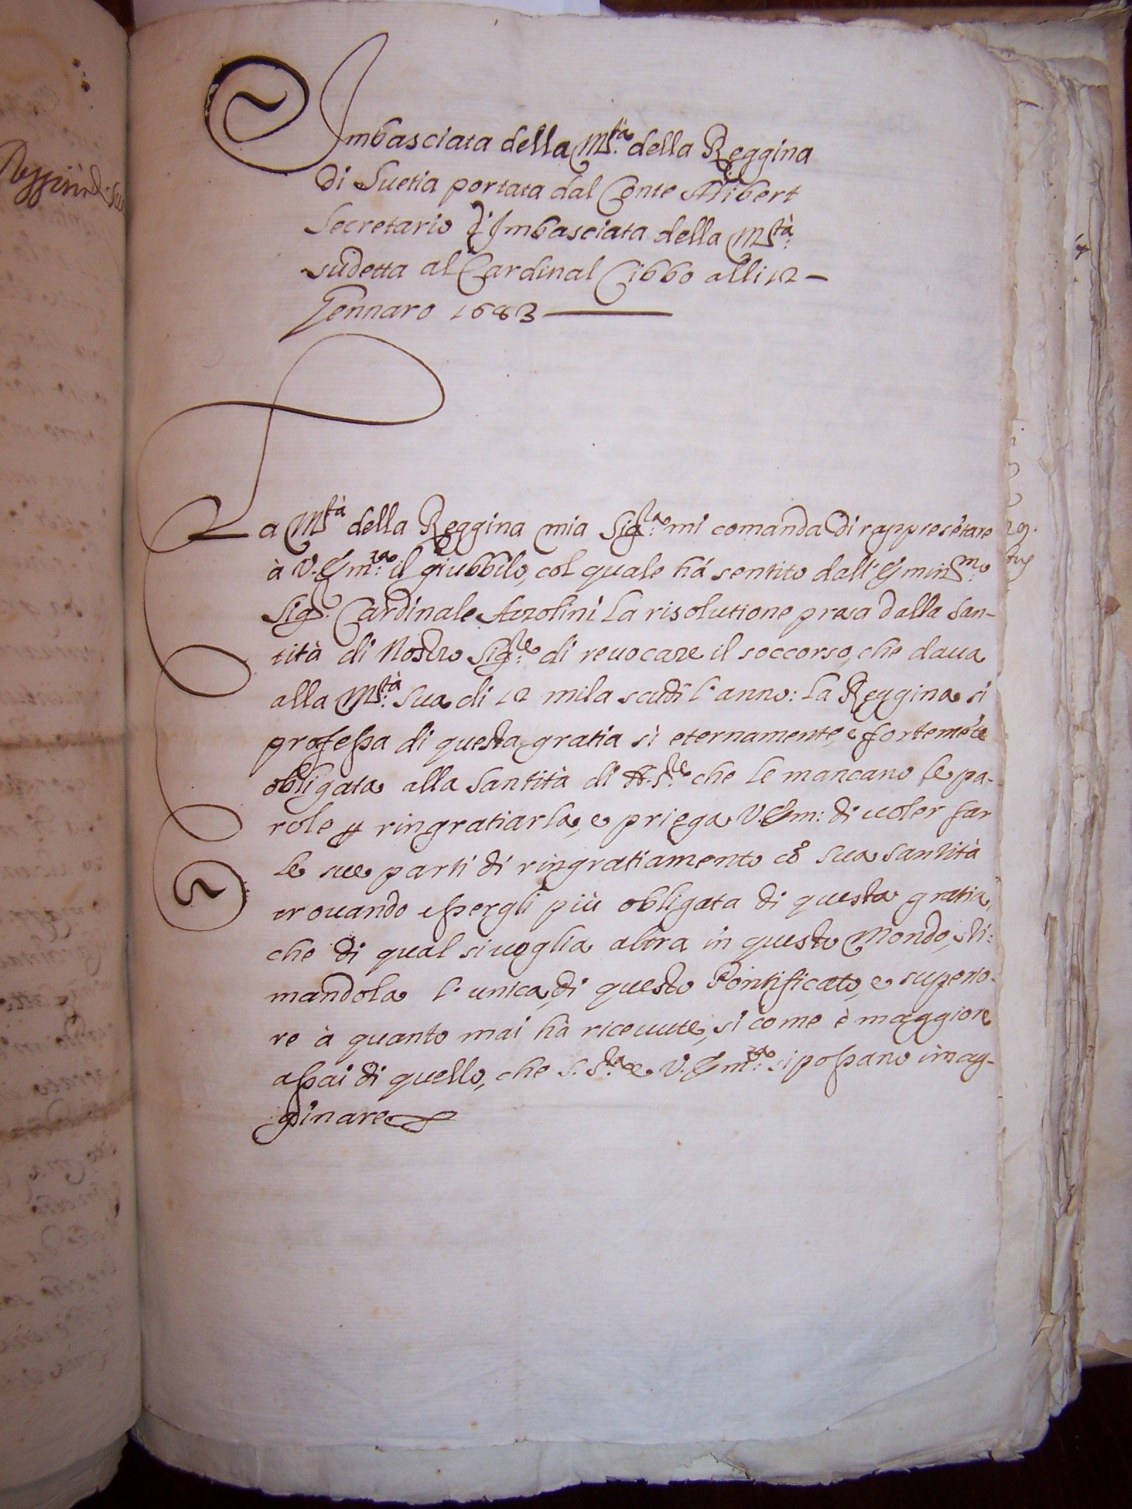 Lettera del gennaio 1643 (qui solo la prima pagina) con una "Ambasciata della Reggina di Svetia..."